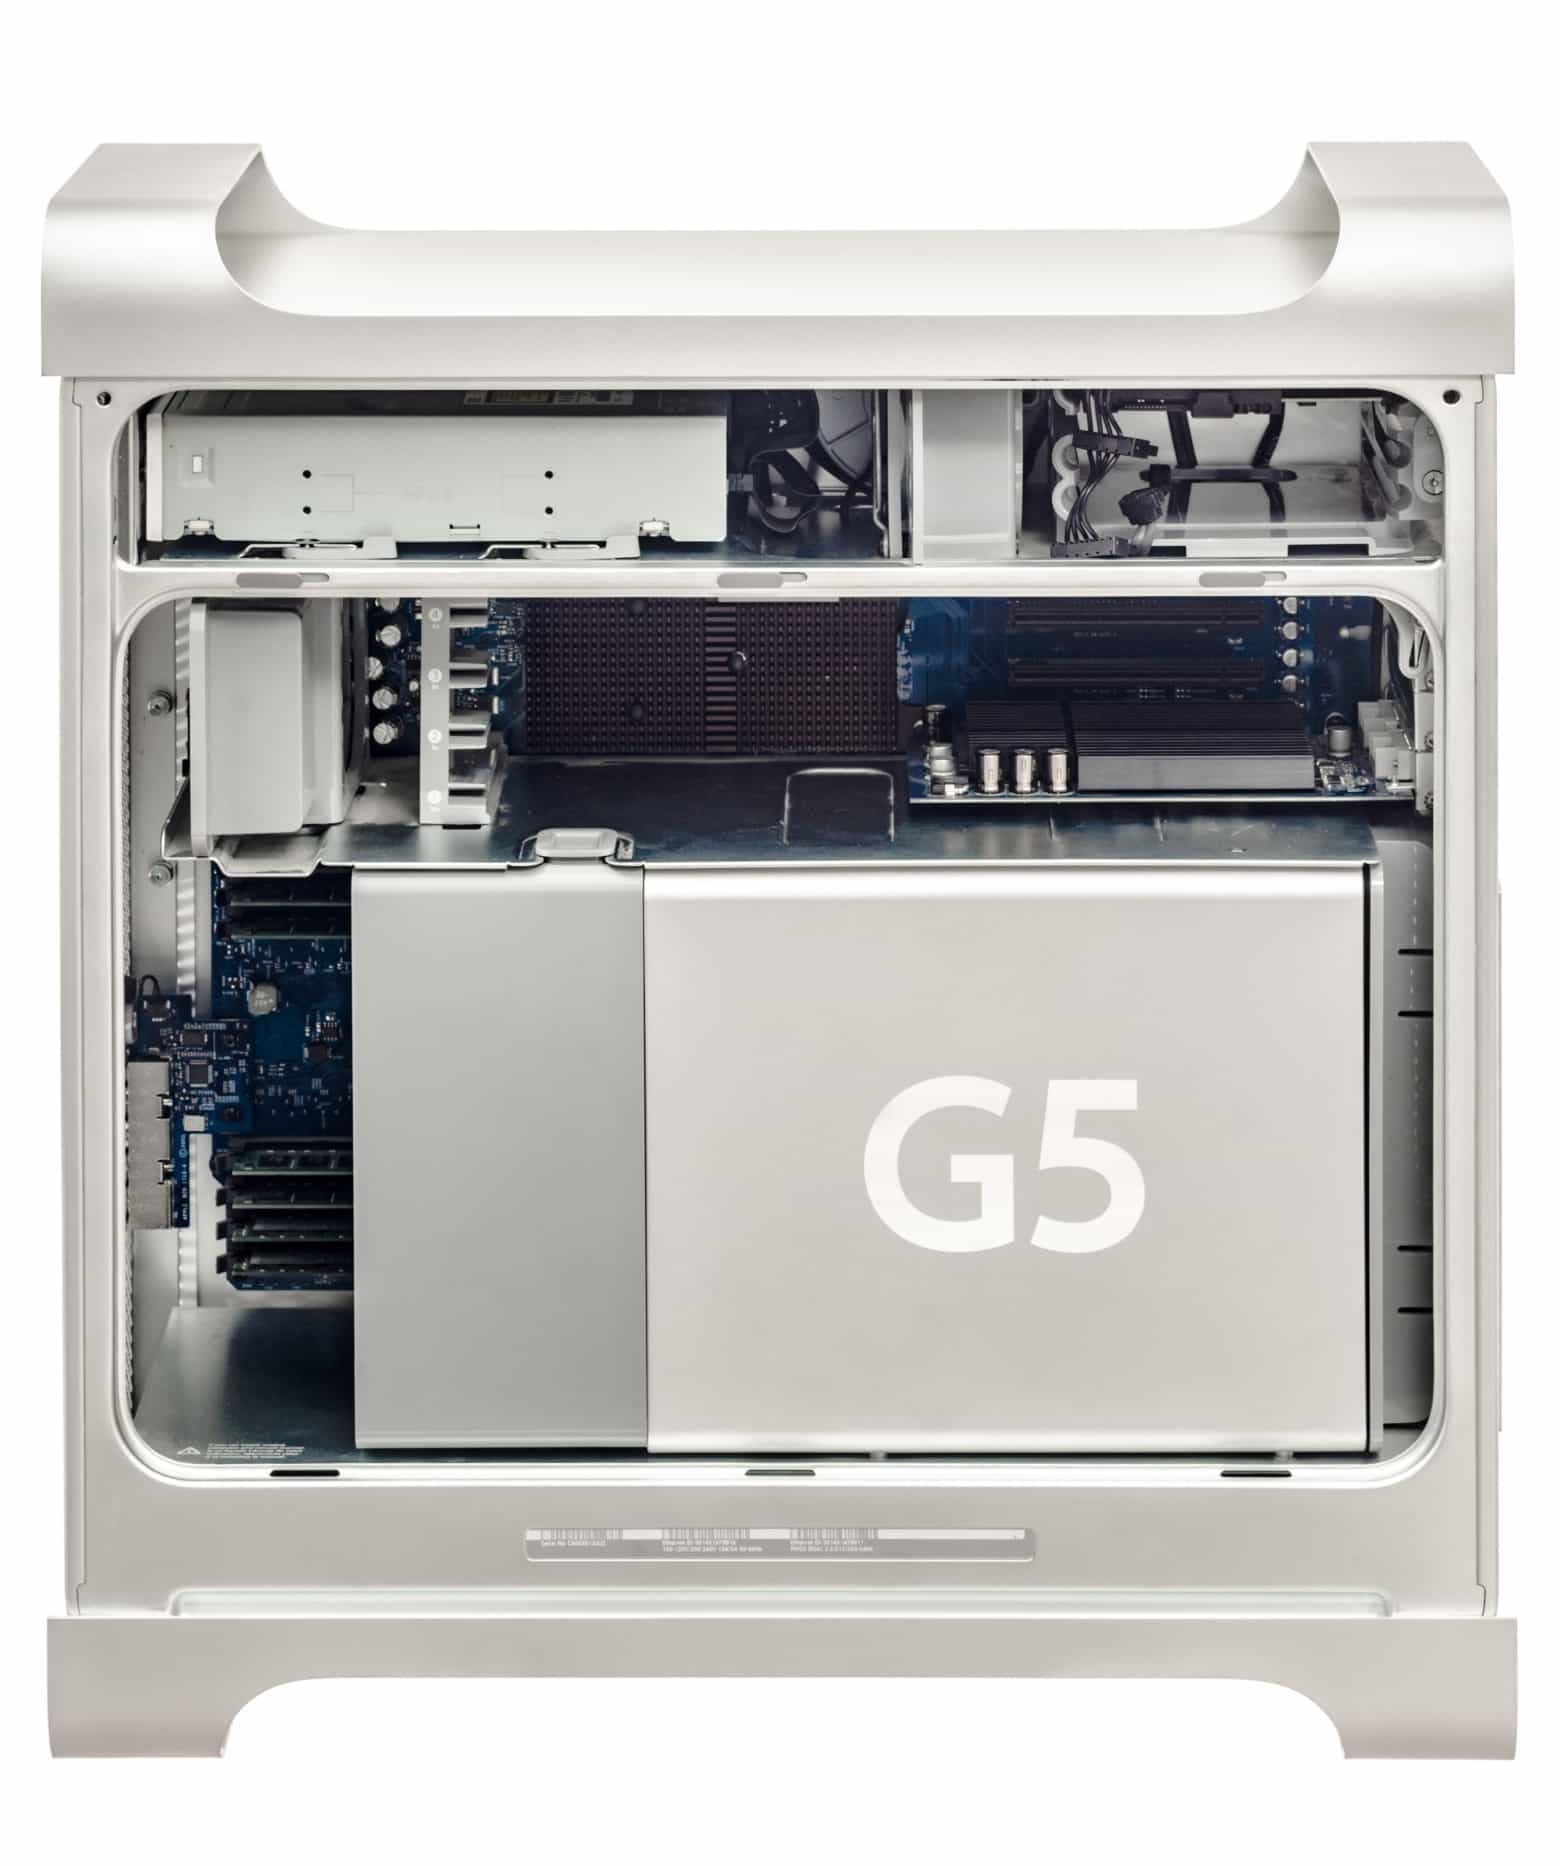 Batteria Apple G5 17"